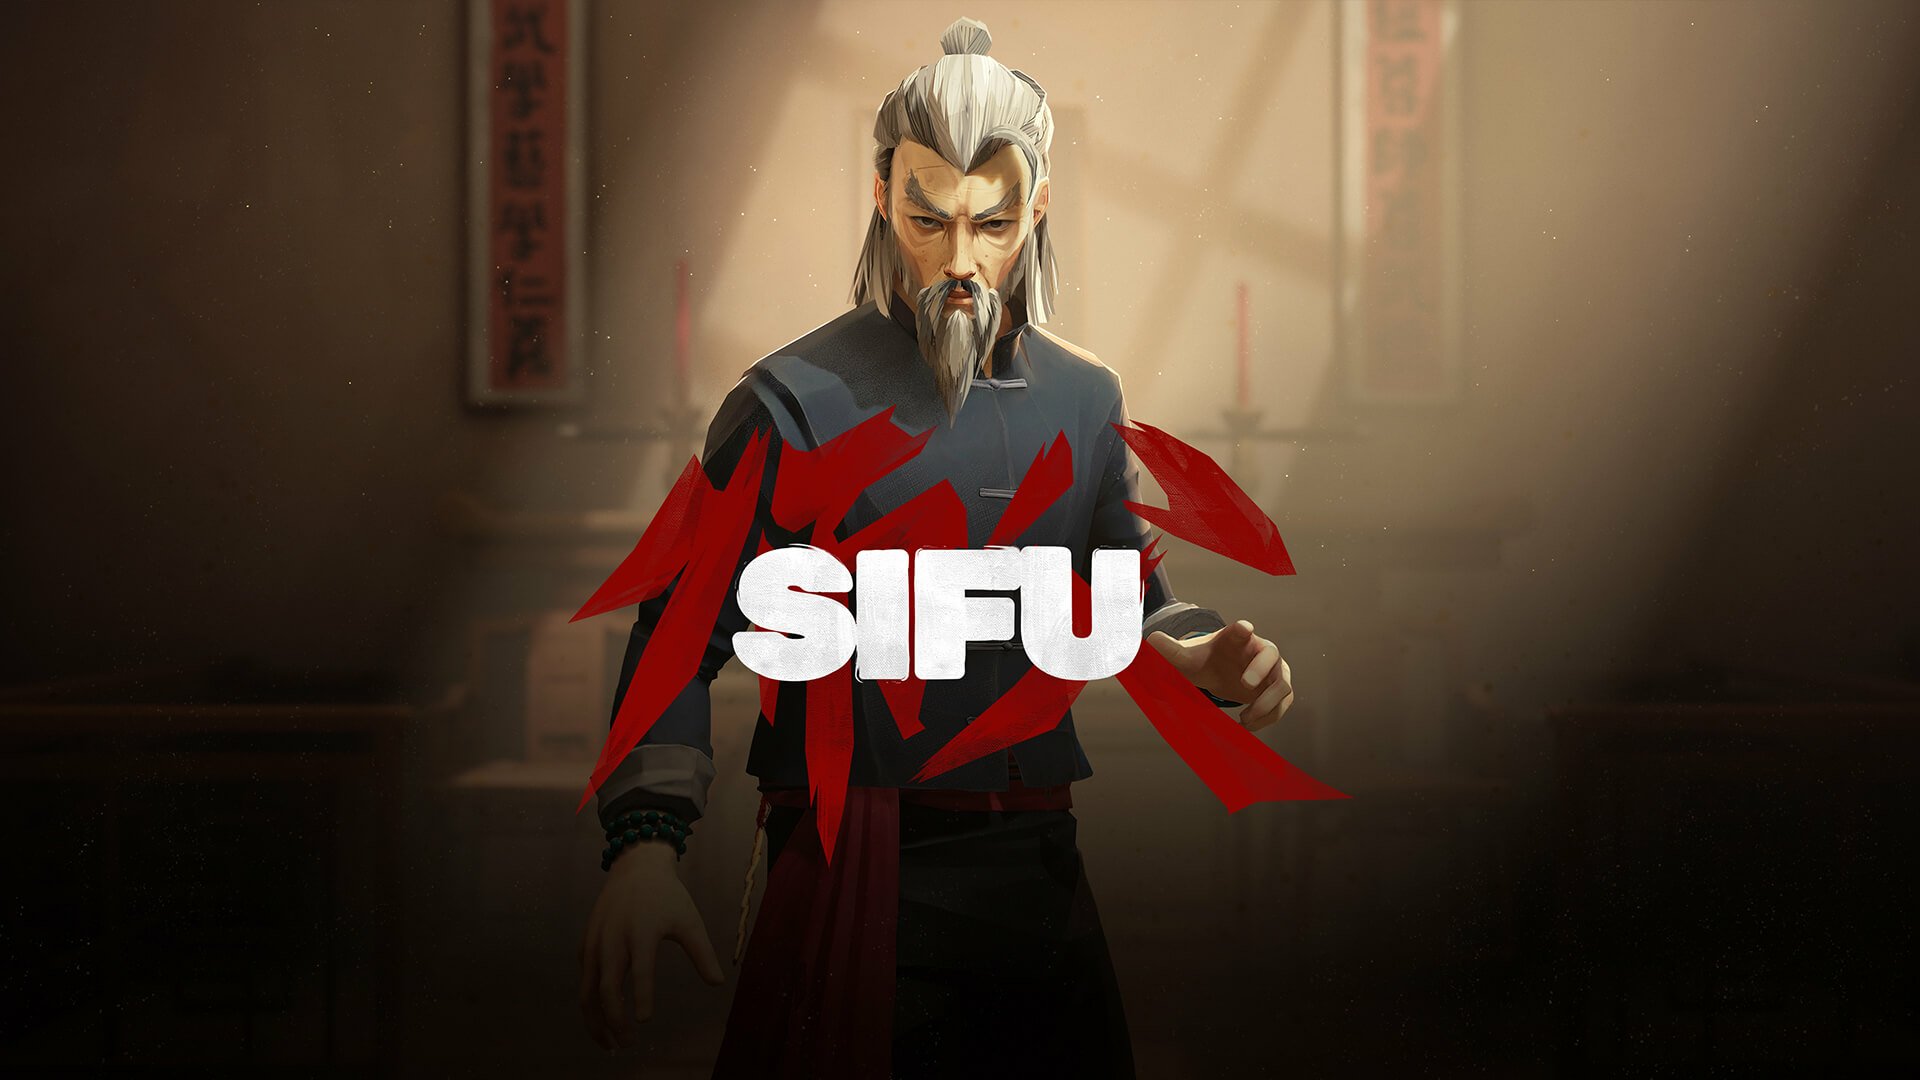 Das Kampfsportspiel Sifu hat mit seinem neuen Trailer seinen Veröffentlichungstermin für Februar.